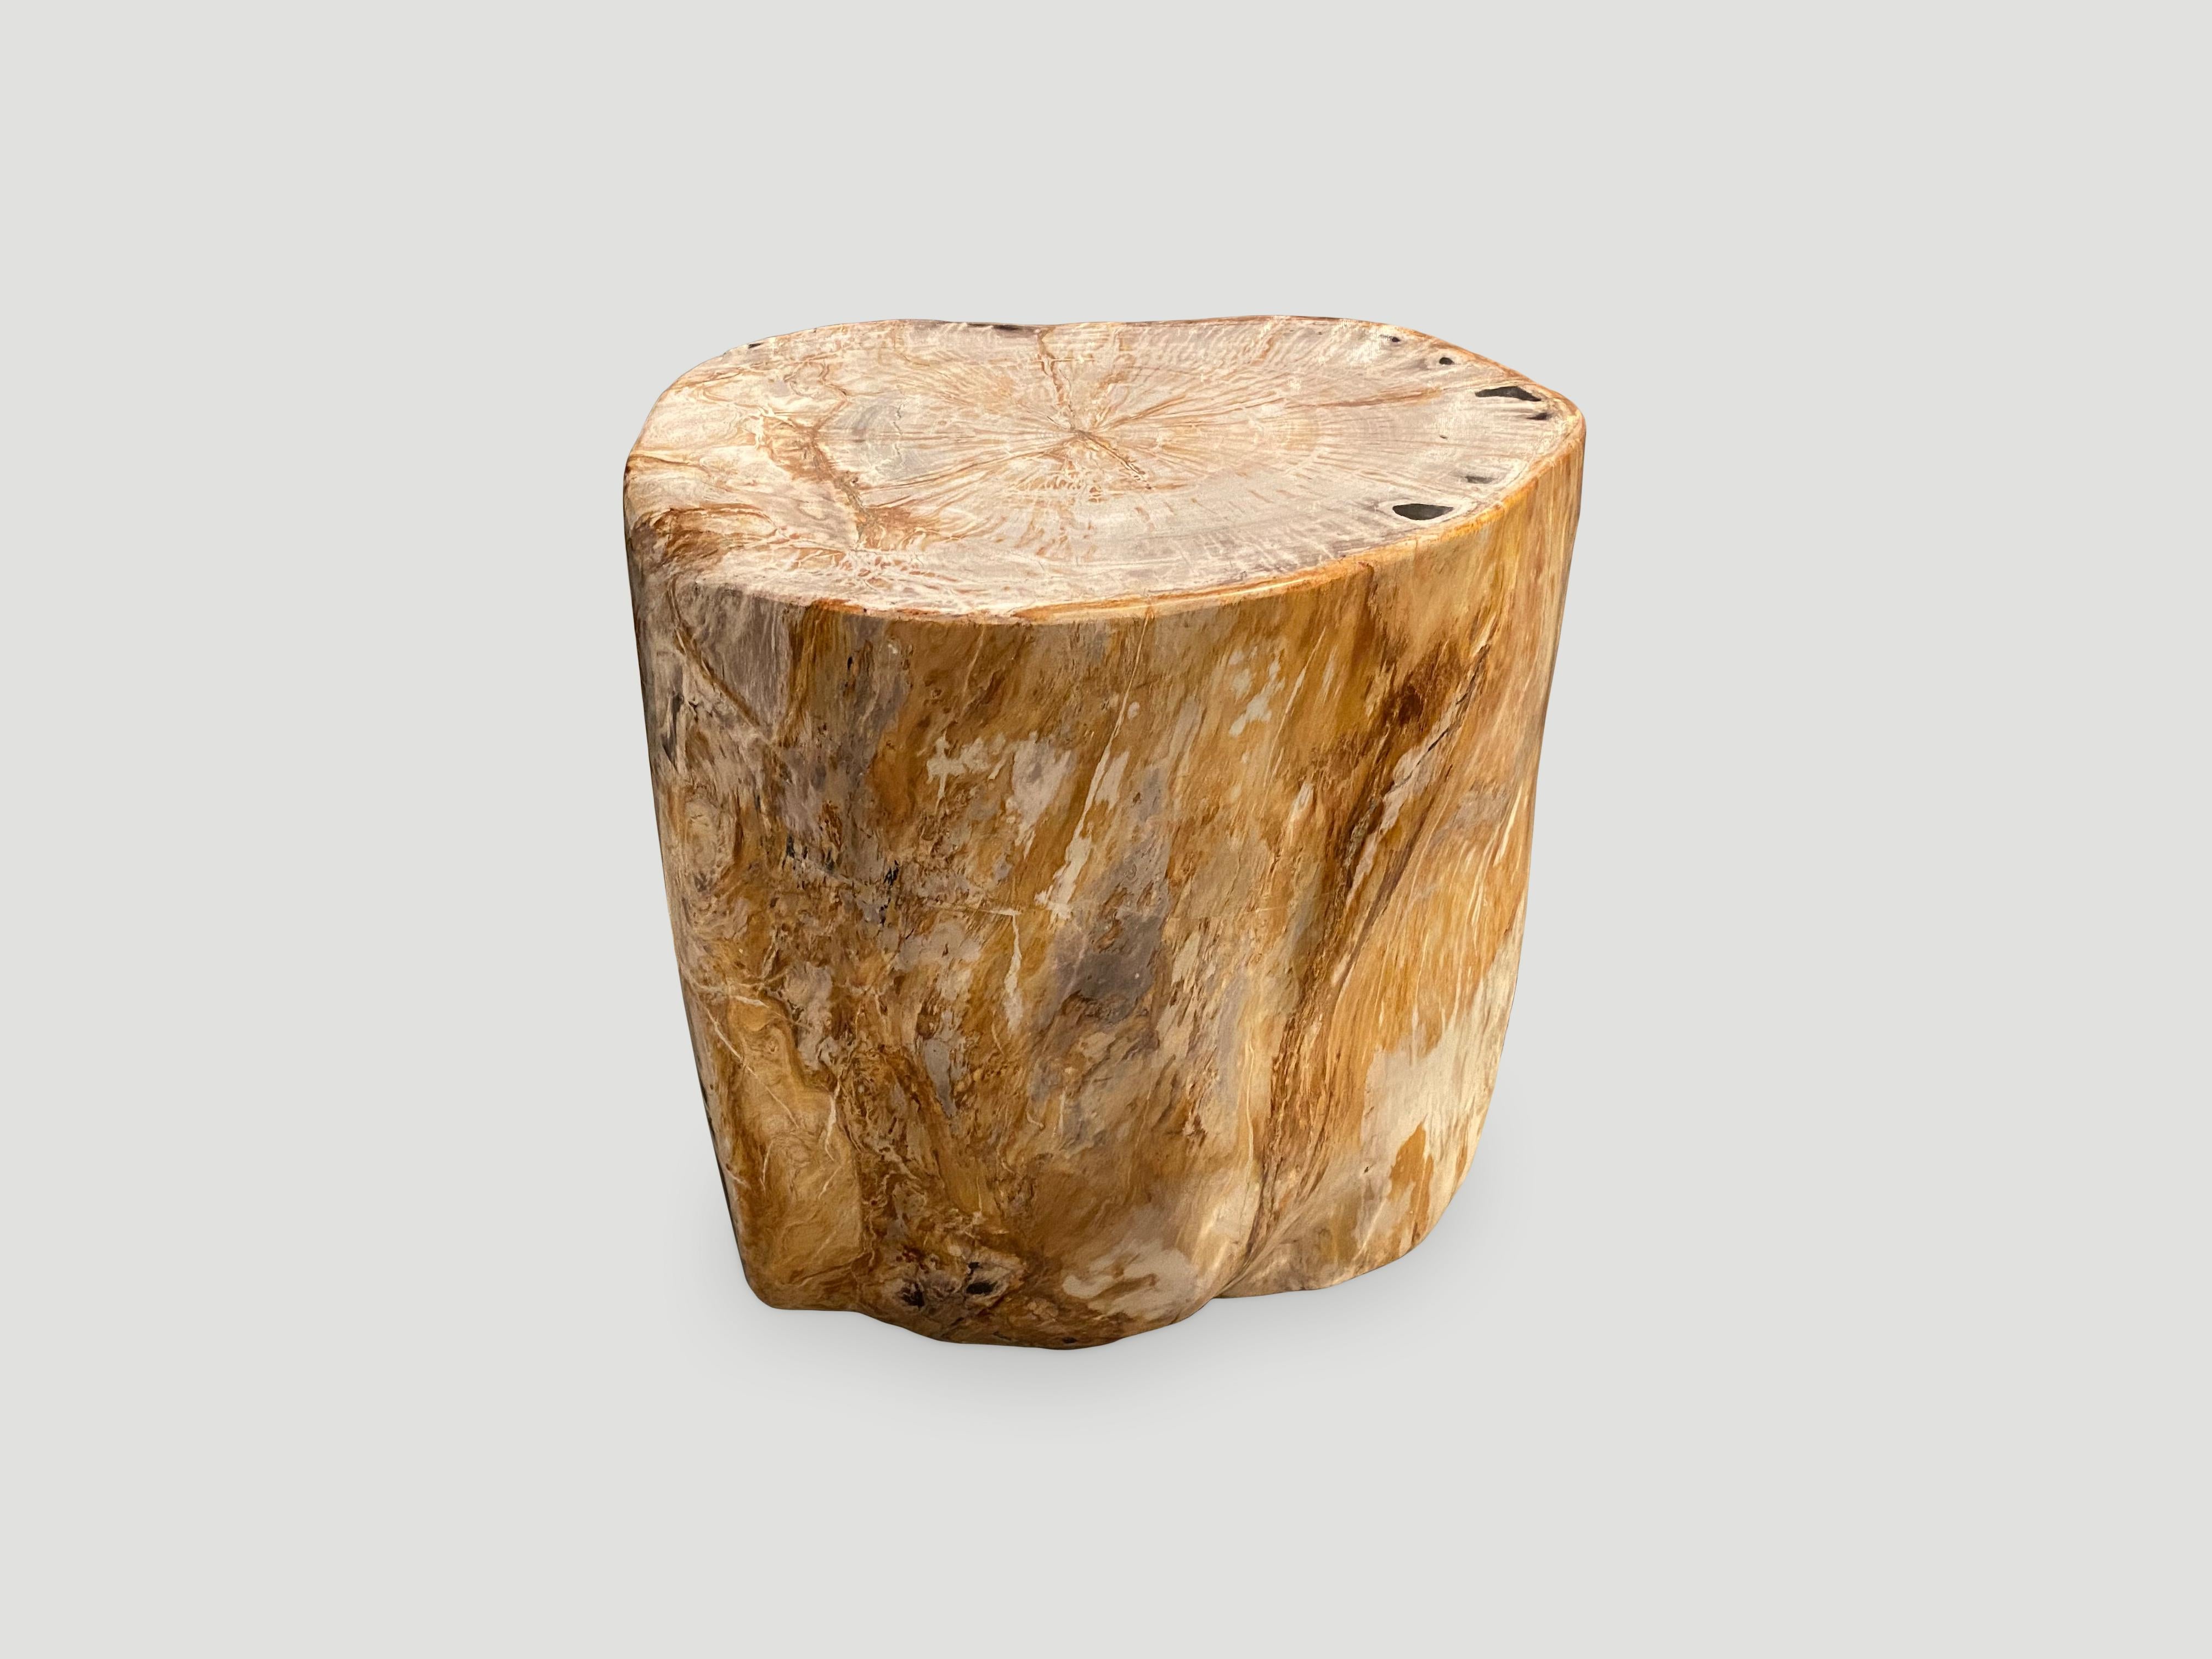 Schöner Beistelltisch aus versteinertem Holz von hoher Qualität. Es ist faszinierend, wie Mutter Natur diese exquisiten, 40 Millionen Jahre alten versteinerten Teakholzstämme mit solch kontrastreichen Farben und natürlichen Mustern und Markierungen